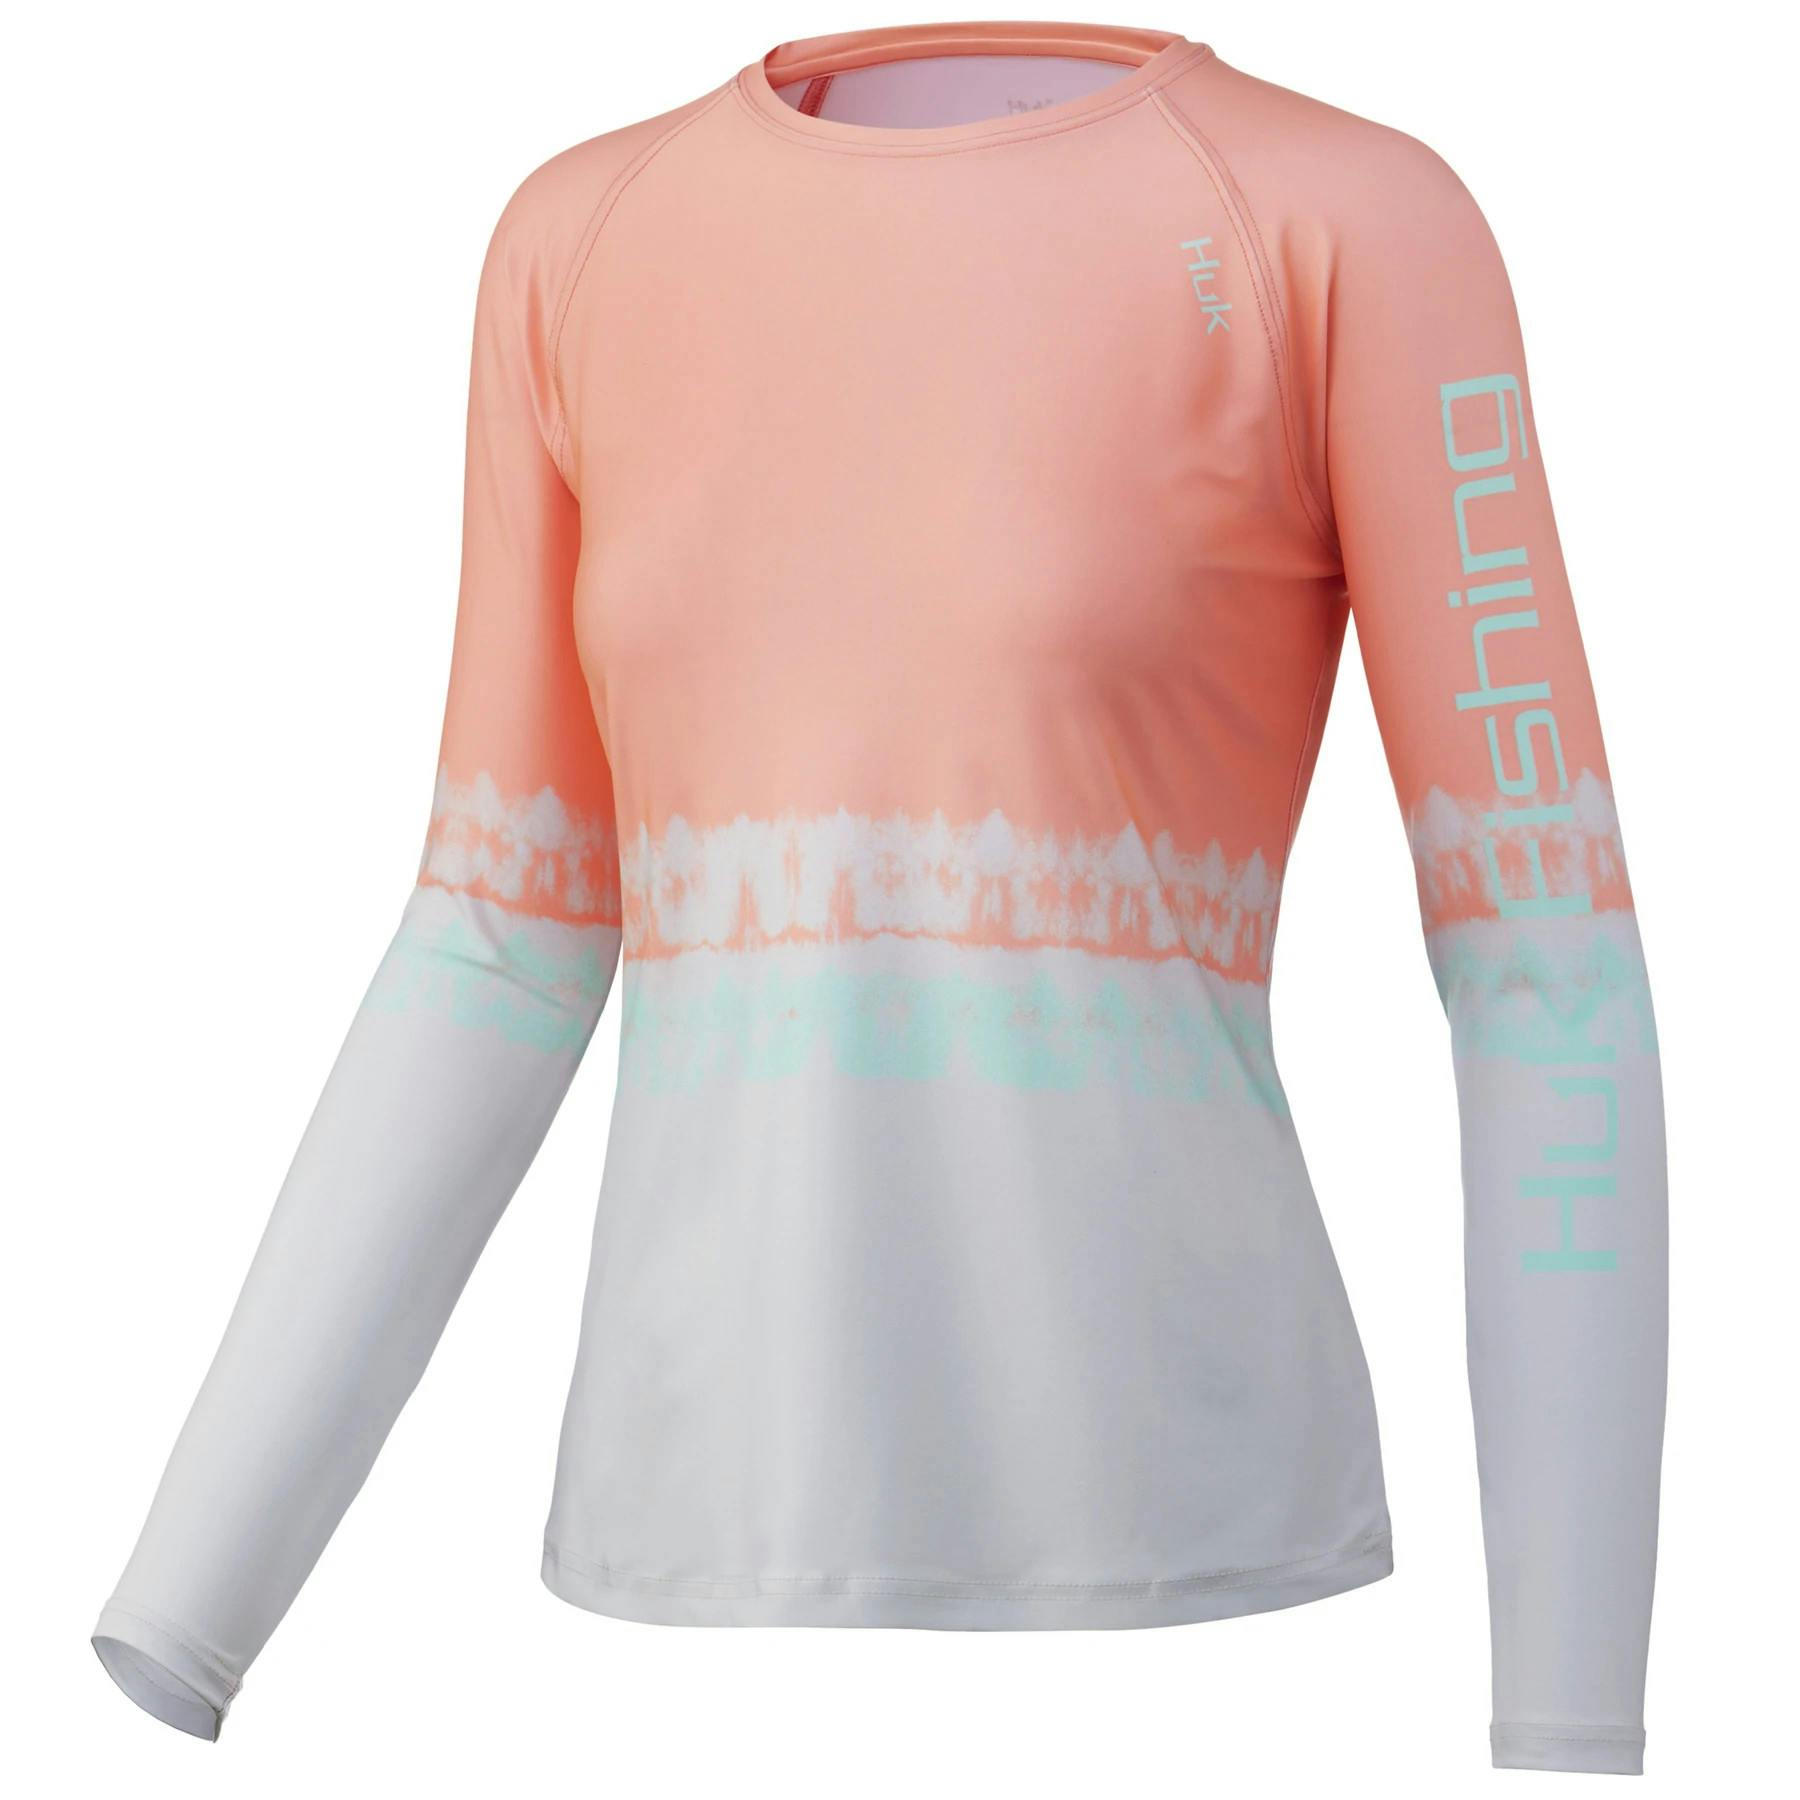 Huk Women's Salt Dye Pursuit Performance Shirt Front - Desert Flower